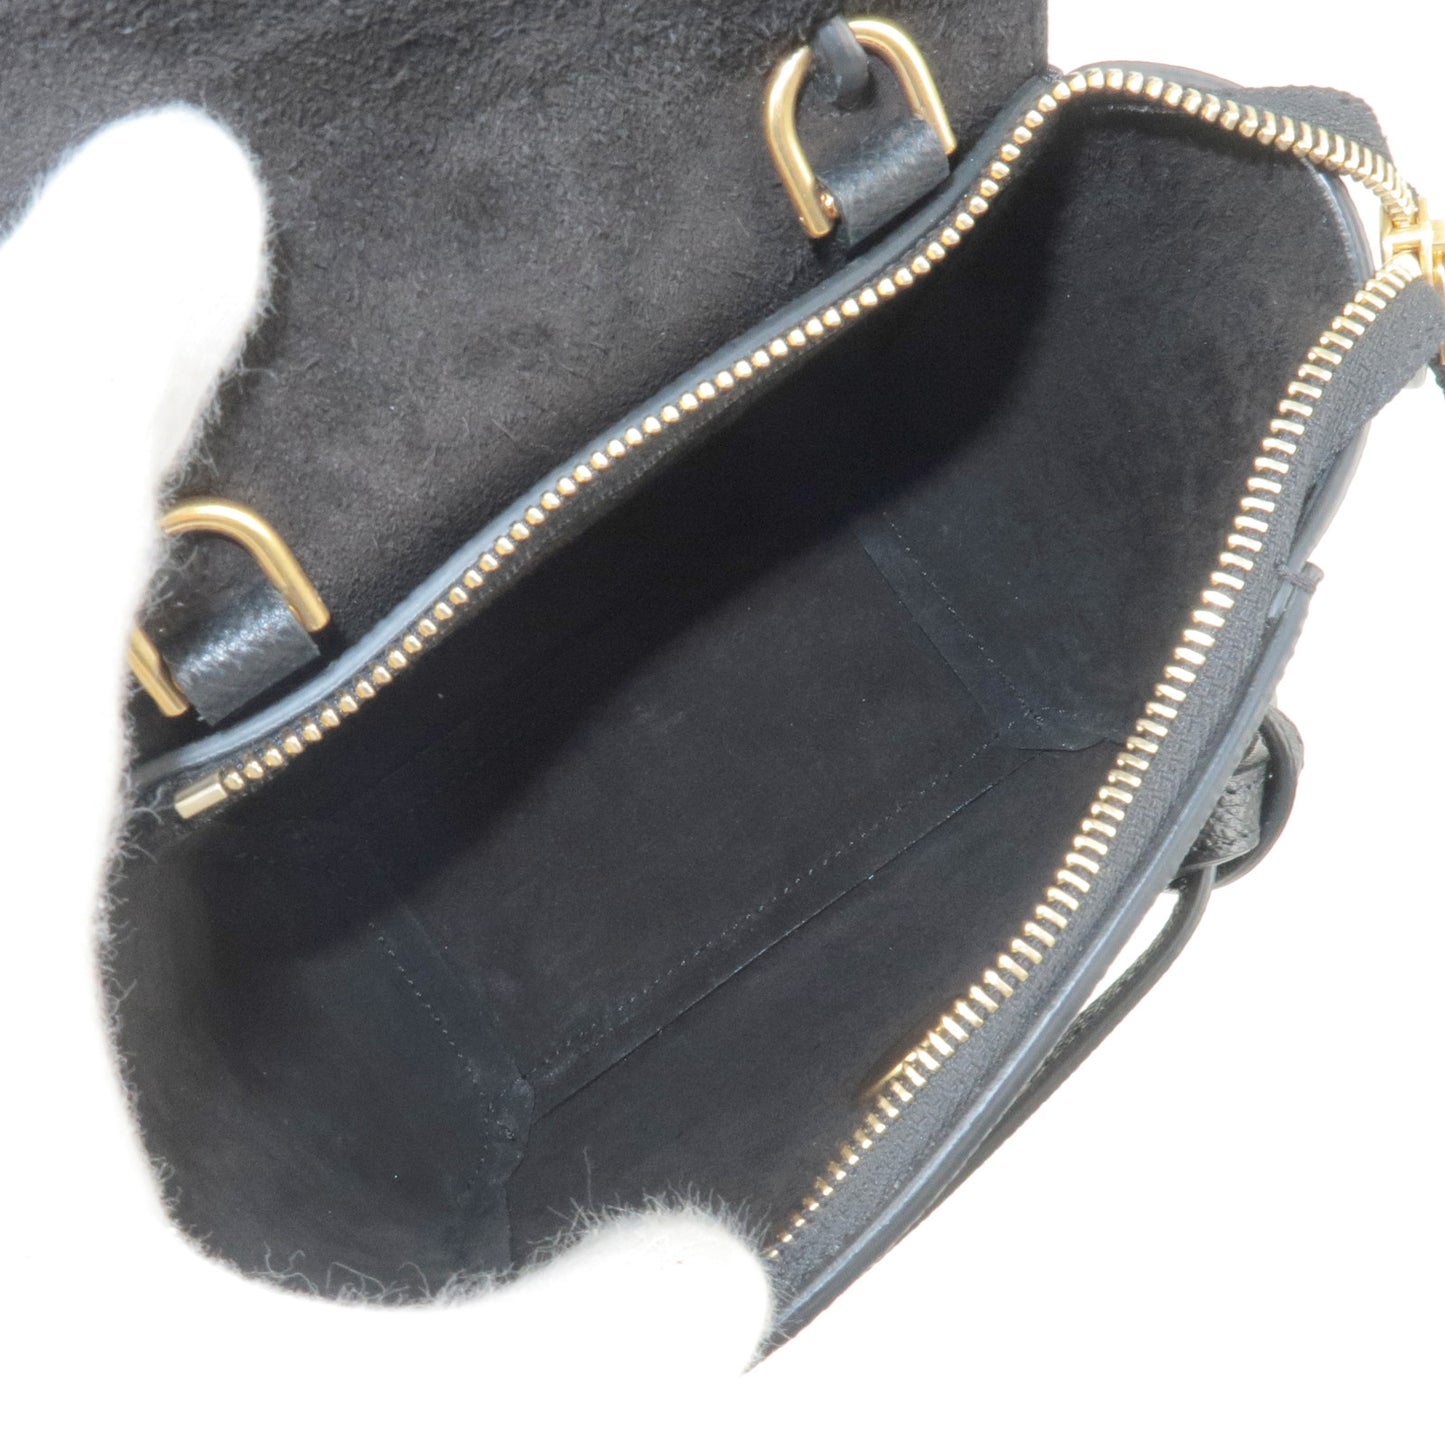 CELINE-Pico-Leather-Belt-Bag-2Way-Bag-Hand-Bag-Black-194263 –  dct-ep_vintage luxury Store